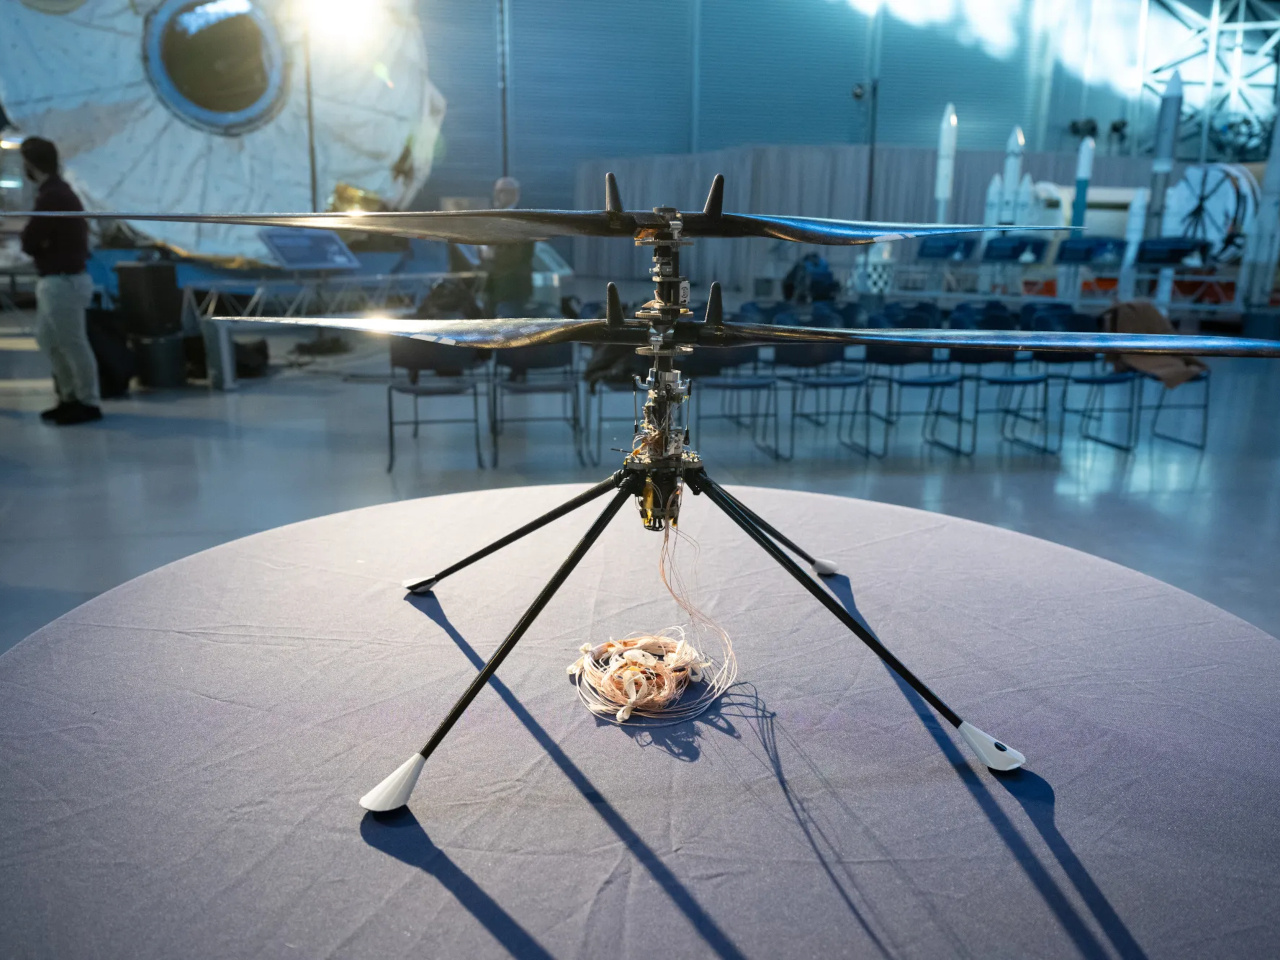 運用終了の火星ヘリ「インジェニュイティ」試作機、スミソニアン博物館で展示